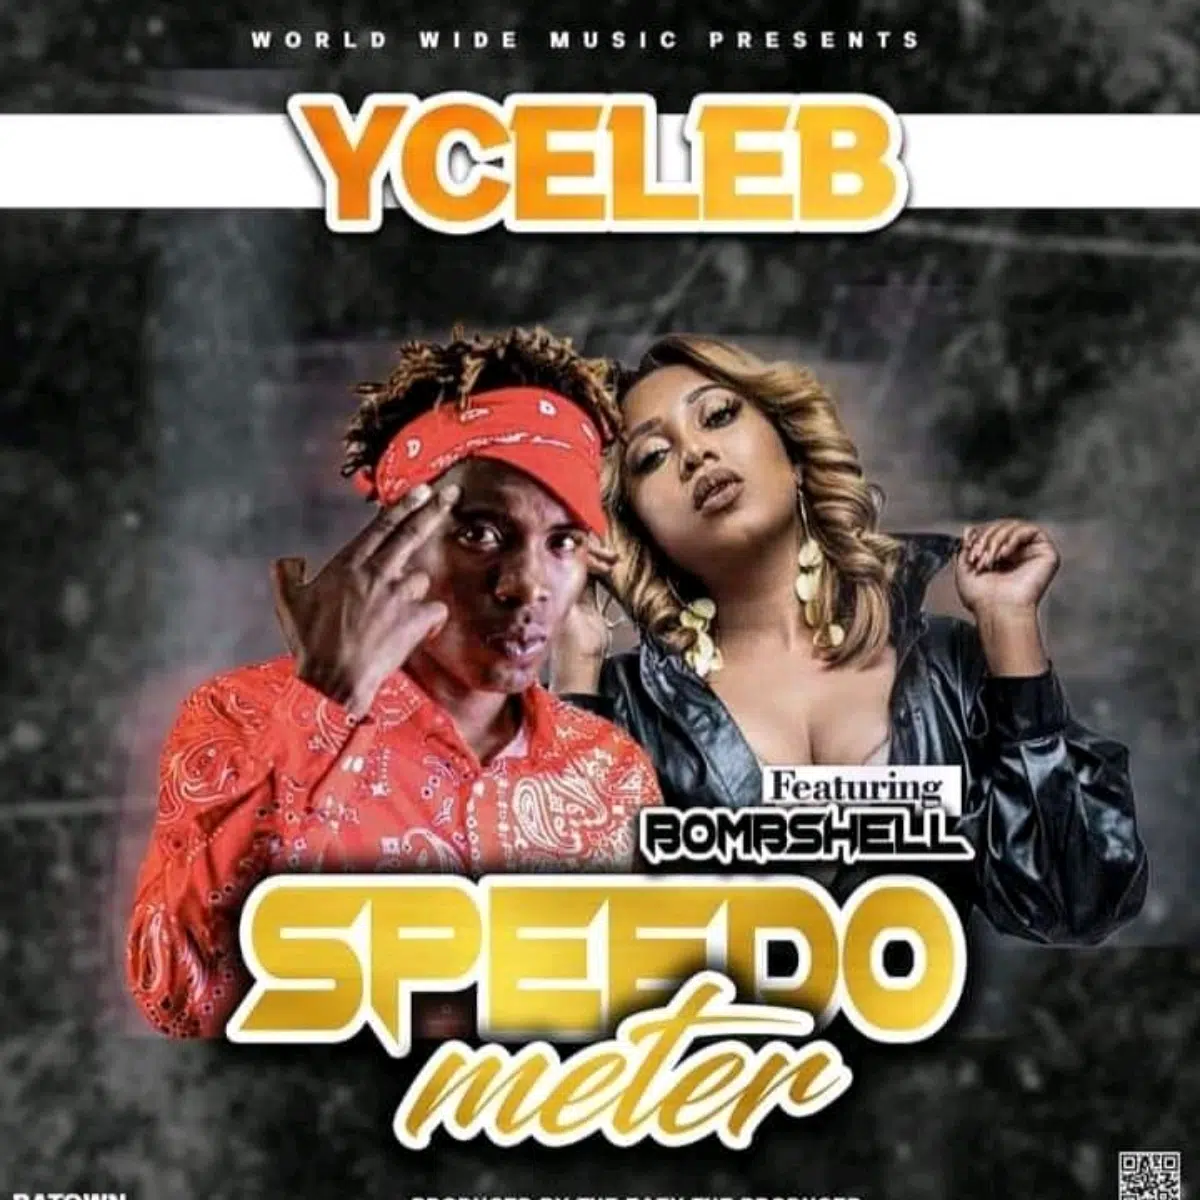 DOWNLOAD: Y Celeb Feat Bombshell – “Speedo Meter” Mp3